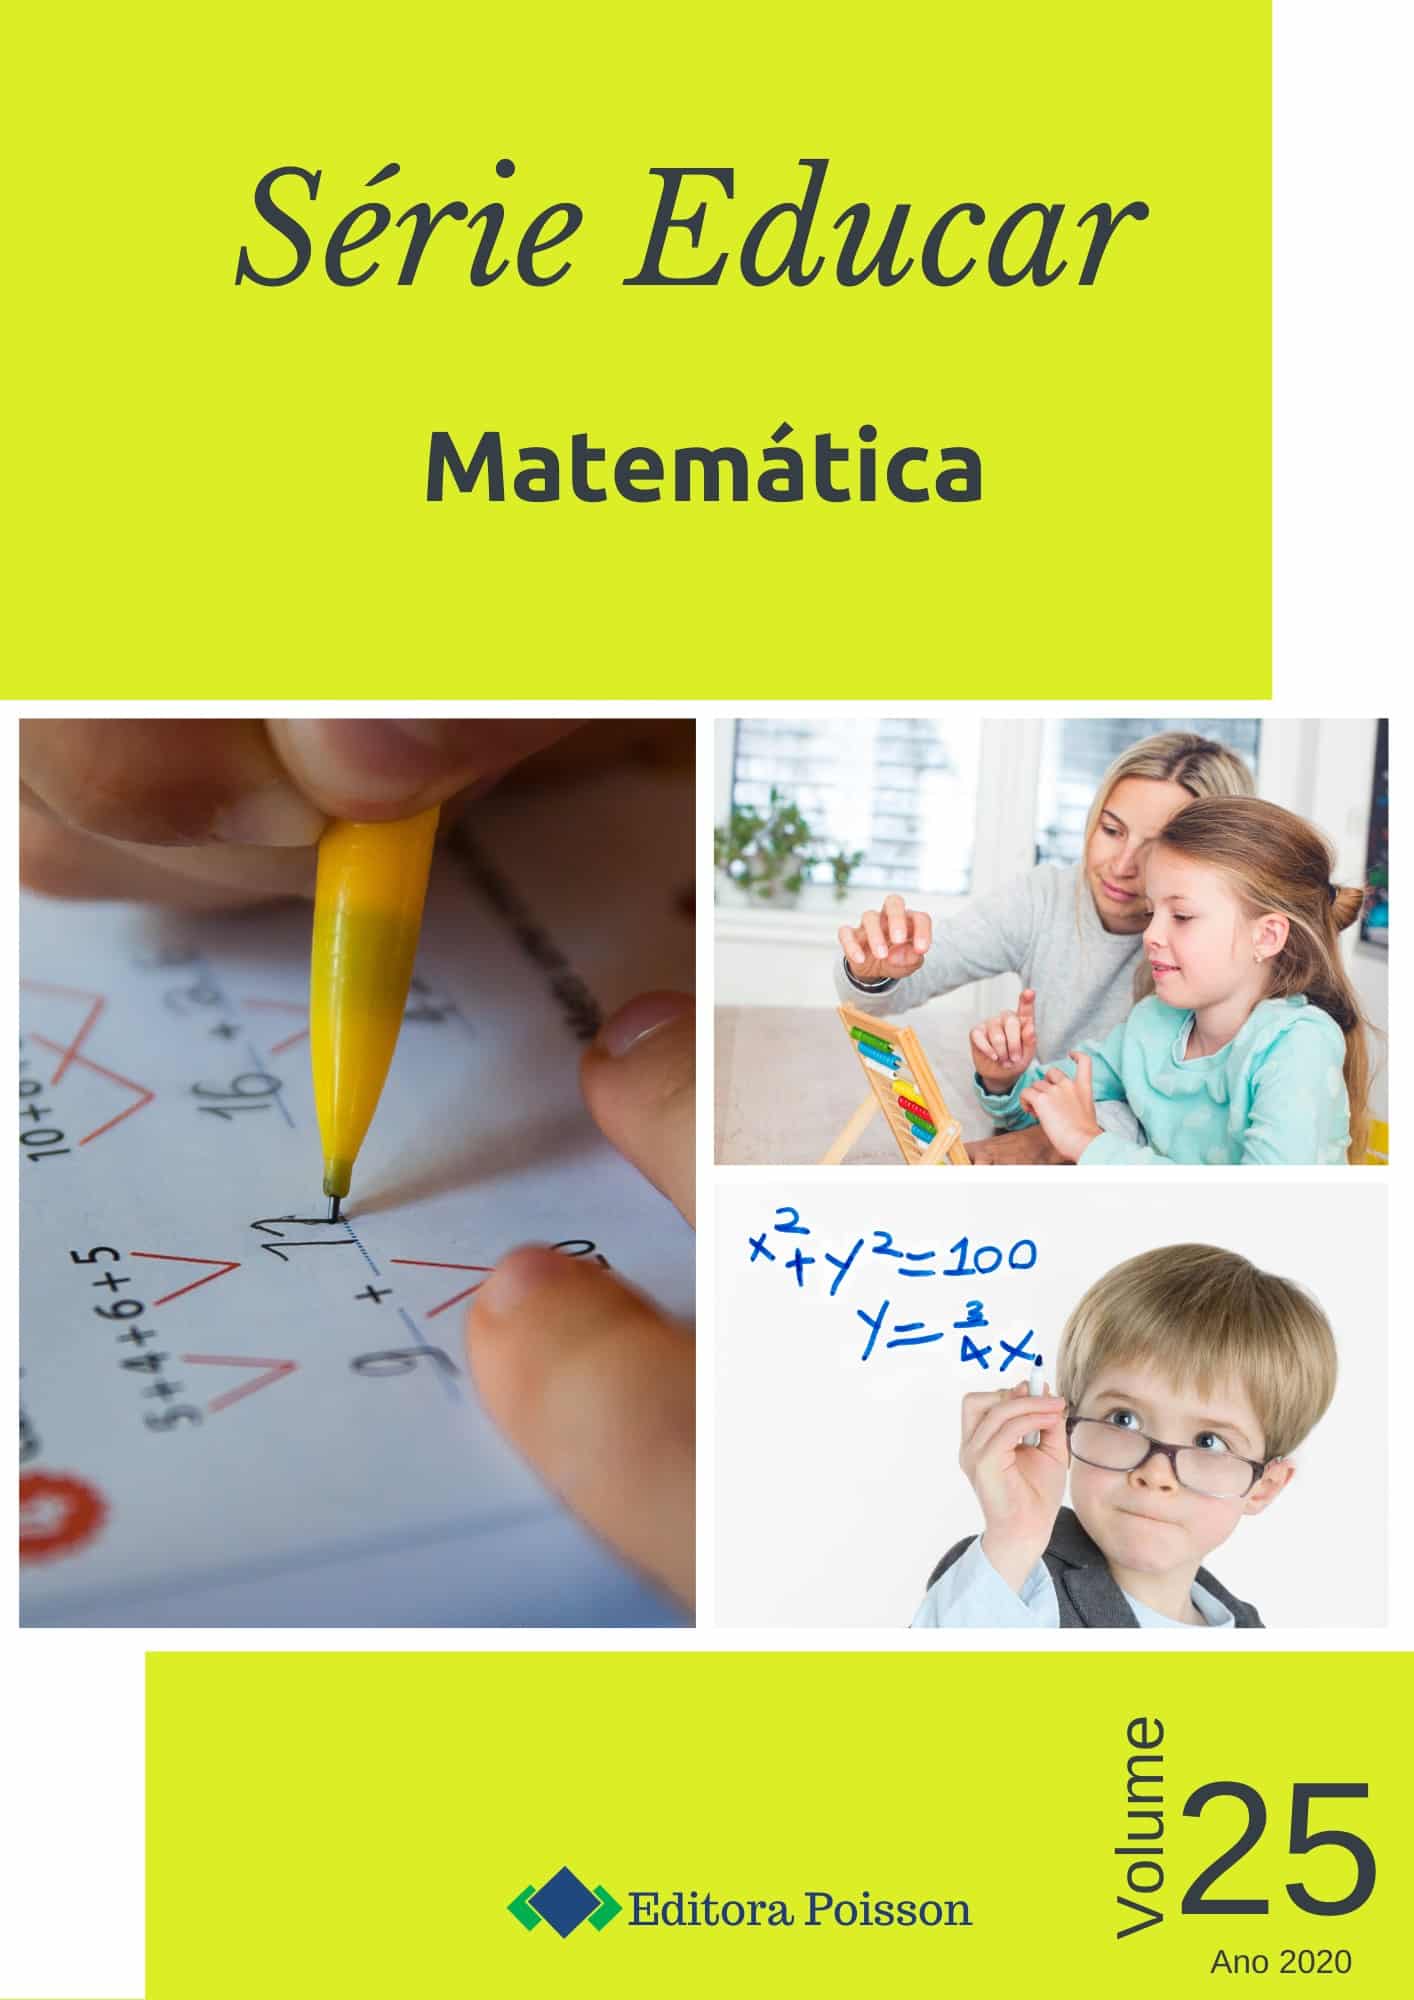 Jogos de Matemática!  Educar é preciso - Blog